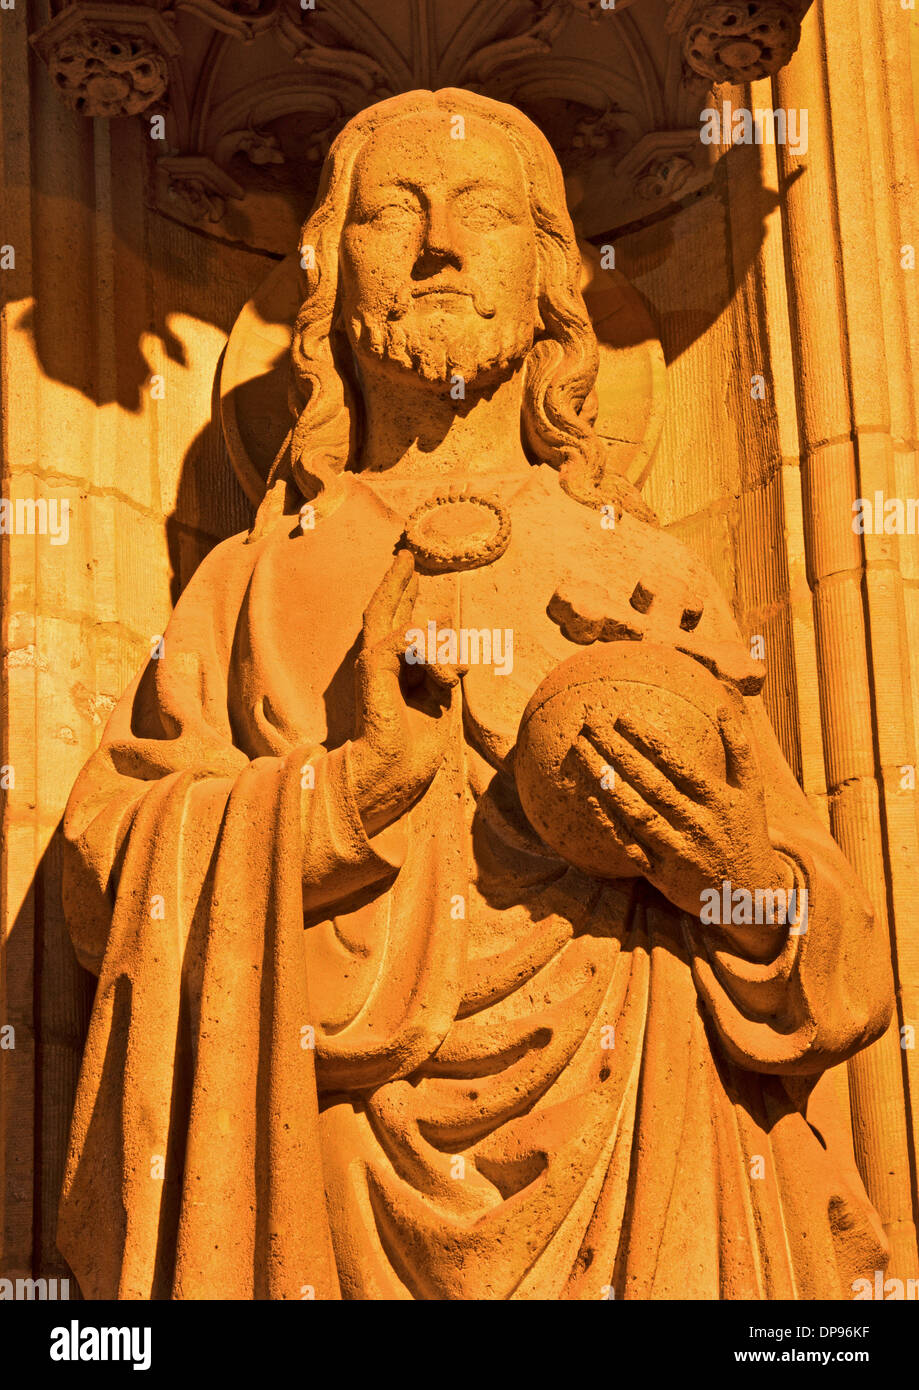 Antwerpen, Belgien - 4 SEPTEMBER: Jesus Christus Pantokrator-Statue auf dem Hauptportal der Kathedrale unserer lieben Frau in der Nacht Stockfoto